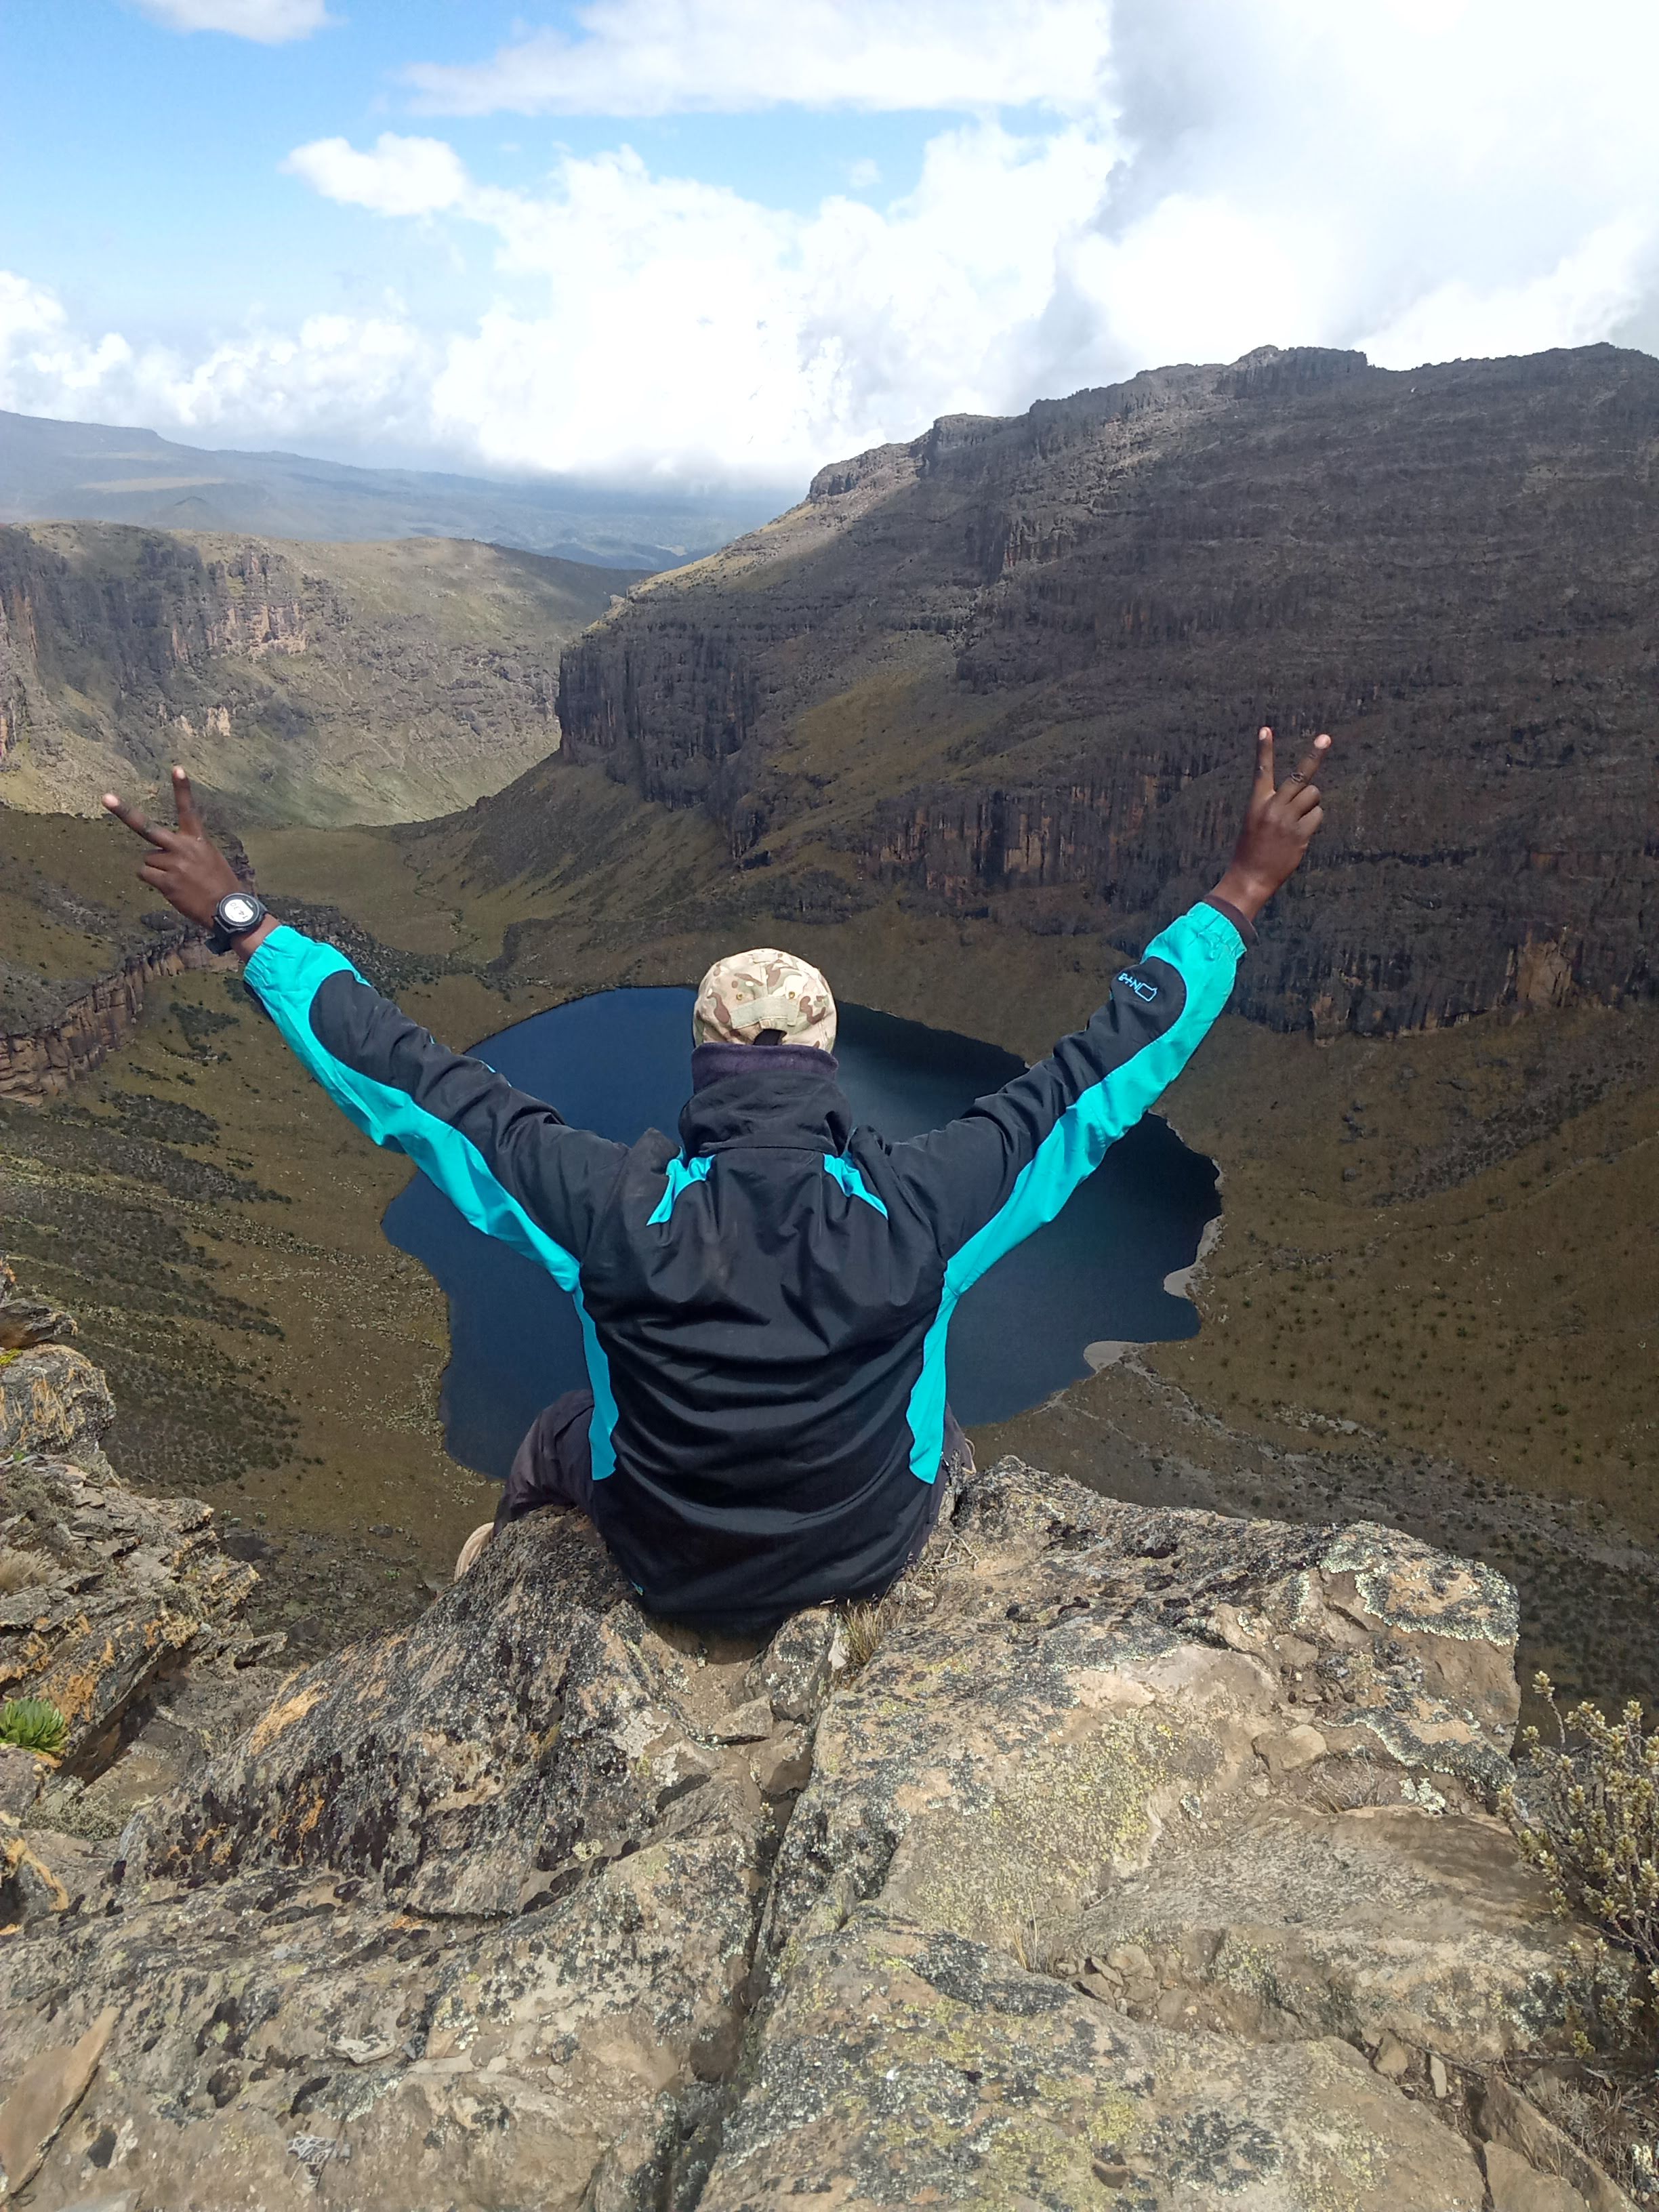 Mt kenya lenana summit- Chogoria Route